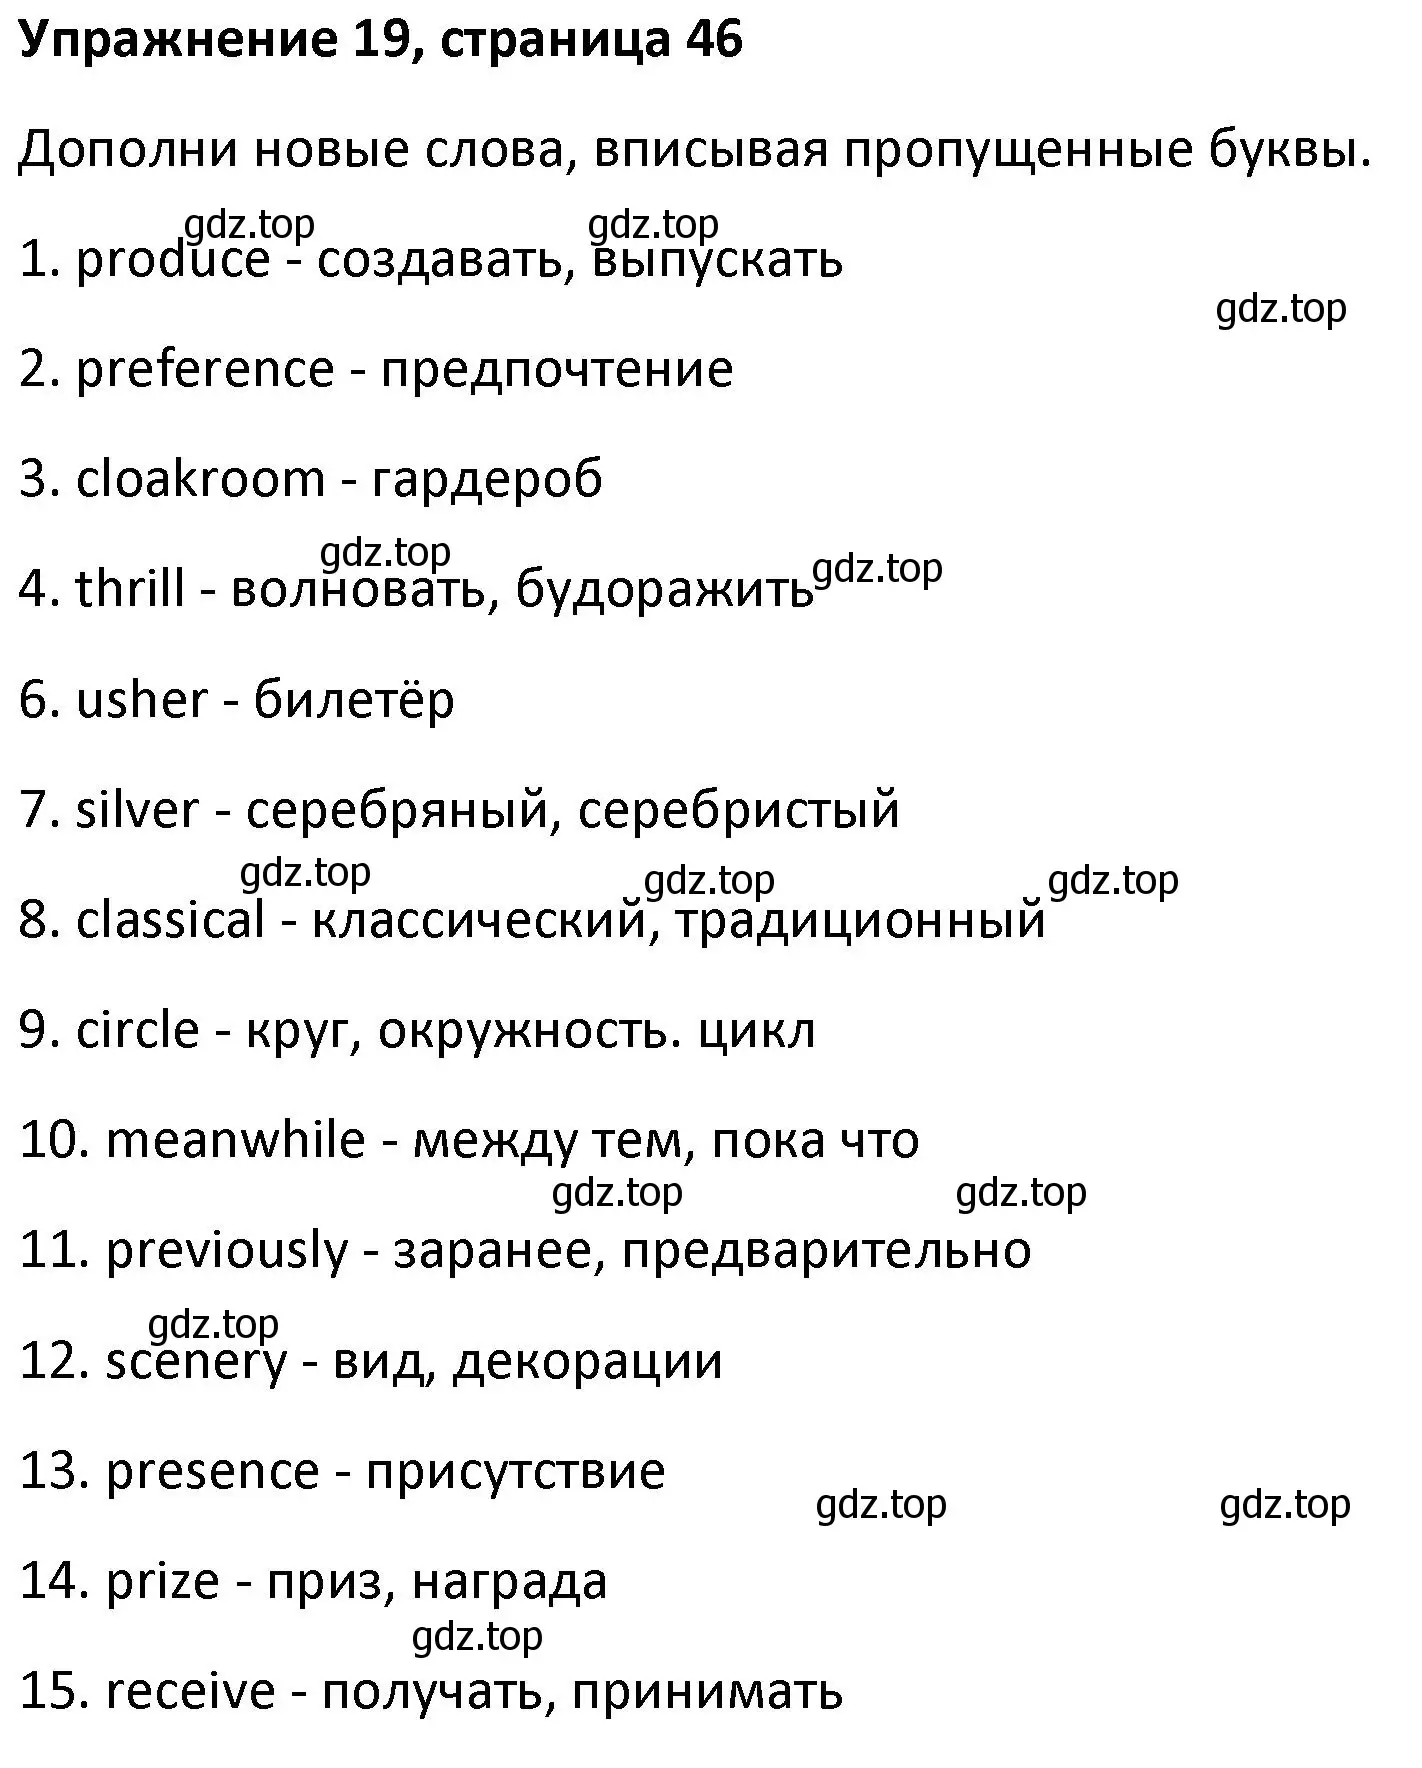 Решение номер 19 (страница 46) гдз по английскому языку 8 класс Афанасьева, Михеева, лексико-грамматический практикум